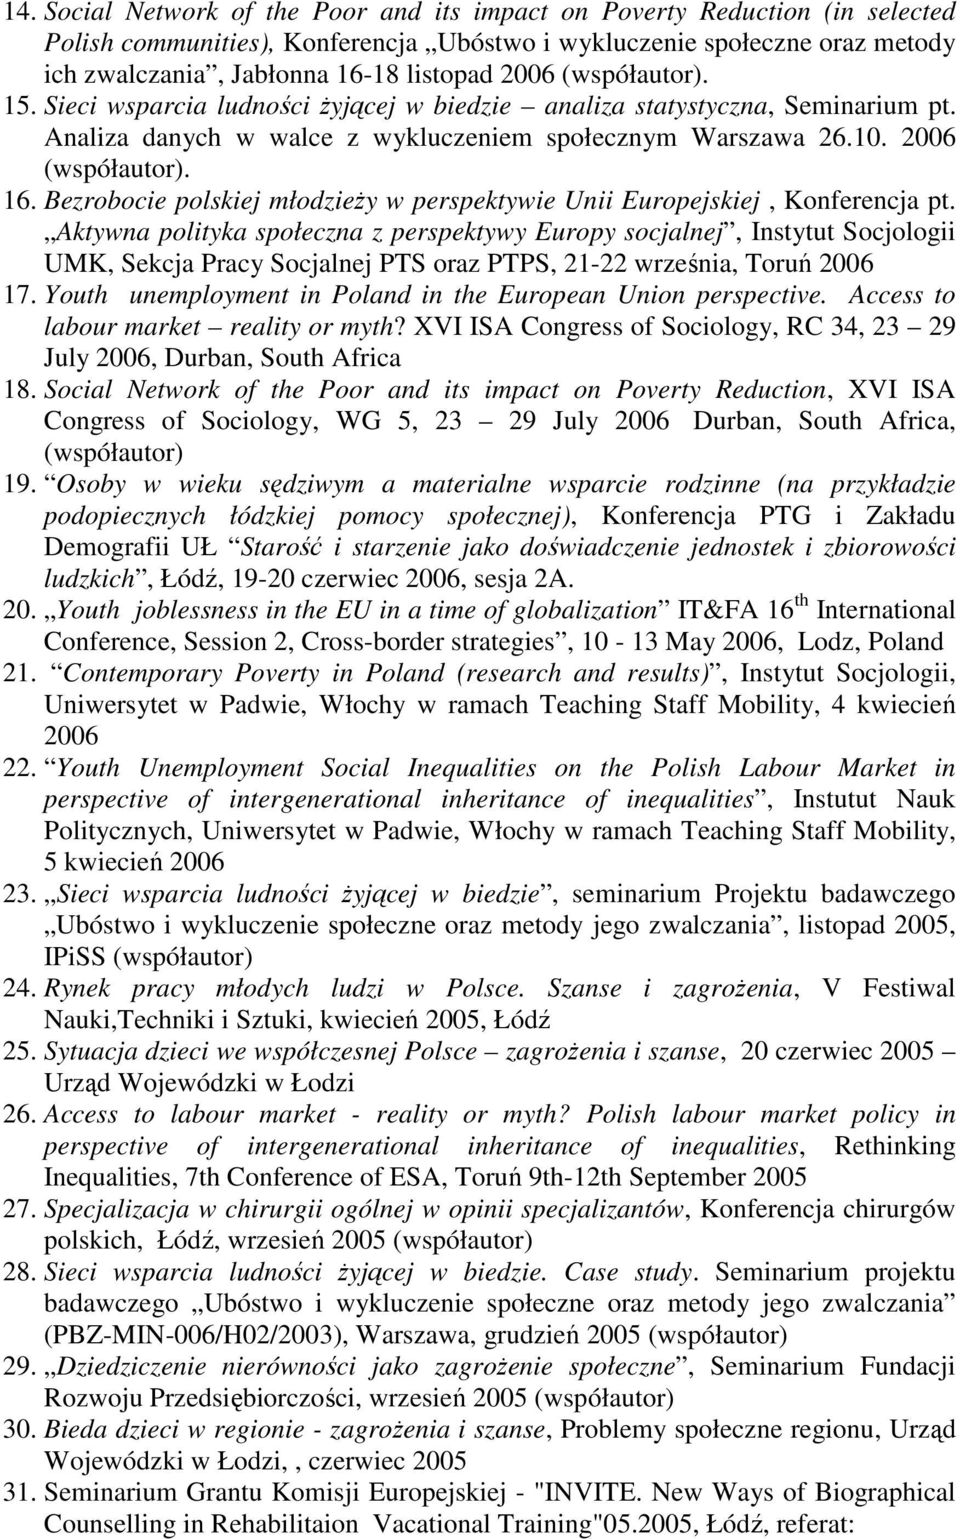 Bezrobocie polskiej młodzieŝy w perspektywie Unii Europejskiej, Konferencja pt.